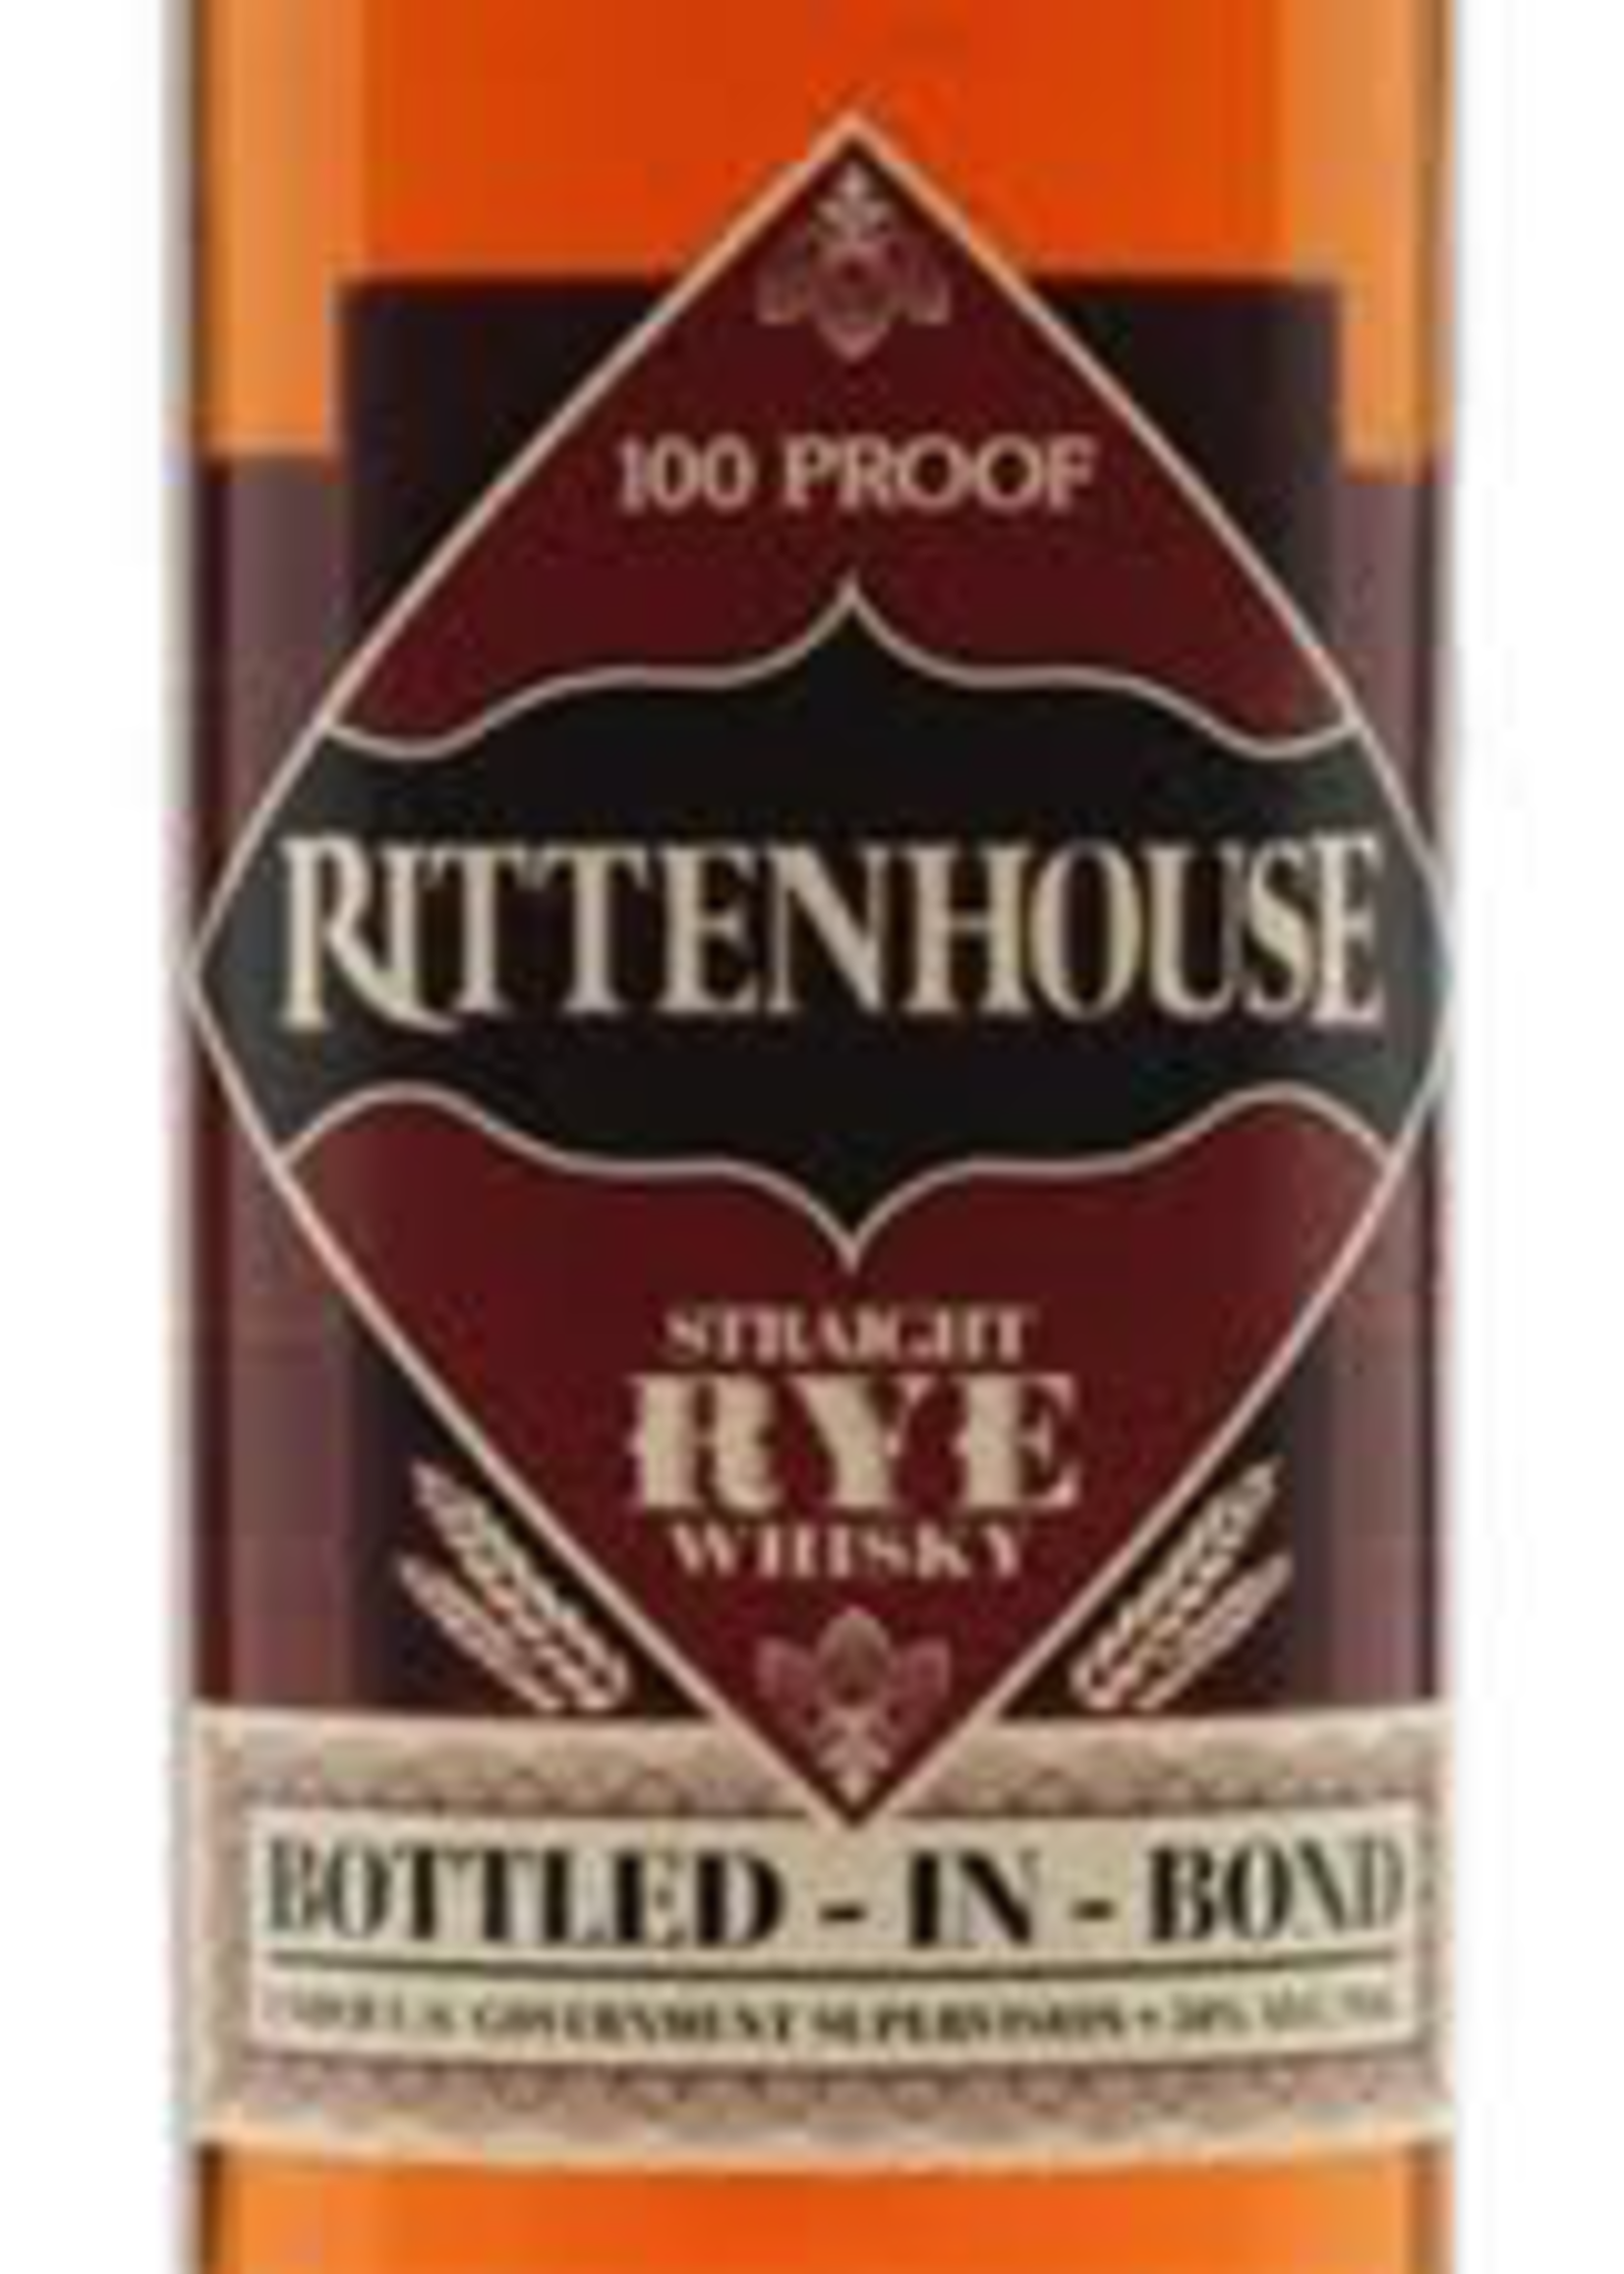 Rittenhouse Rittenhouse Rye "Bottled in Bond" 750ML